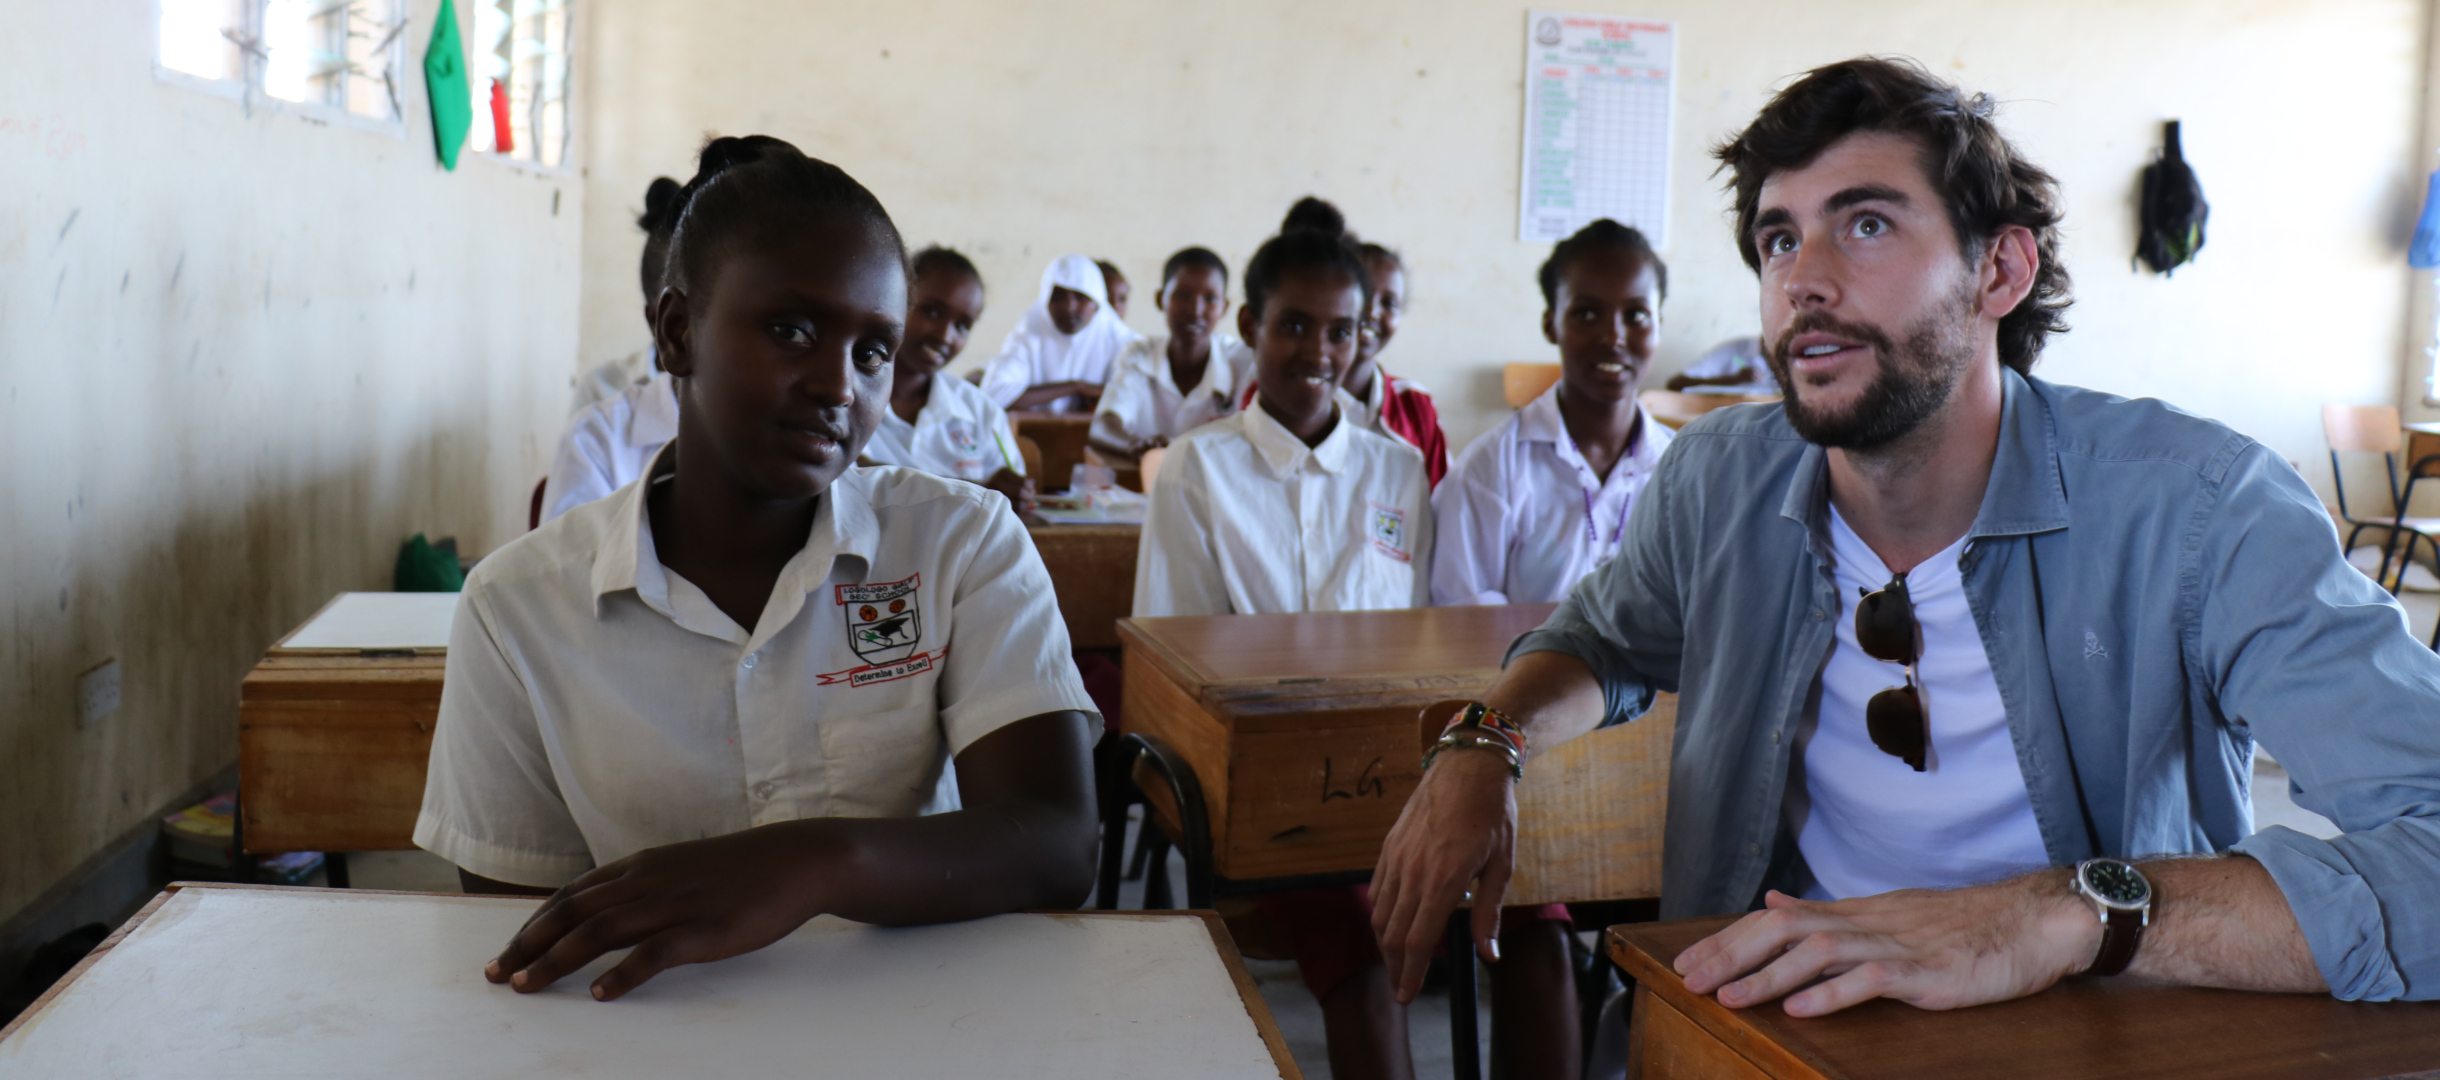 Alvaro Soler mit Schülerinnen einer Mittelschule in Kenia im Gespräch